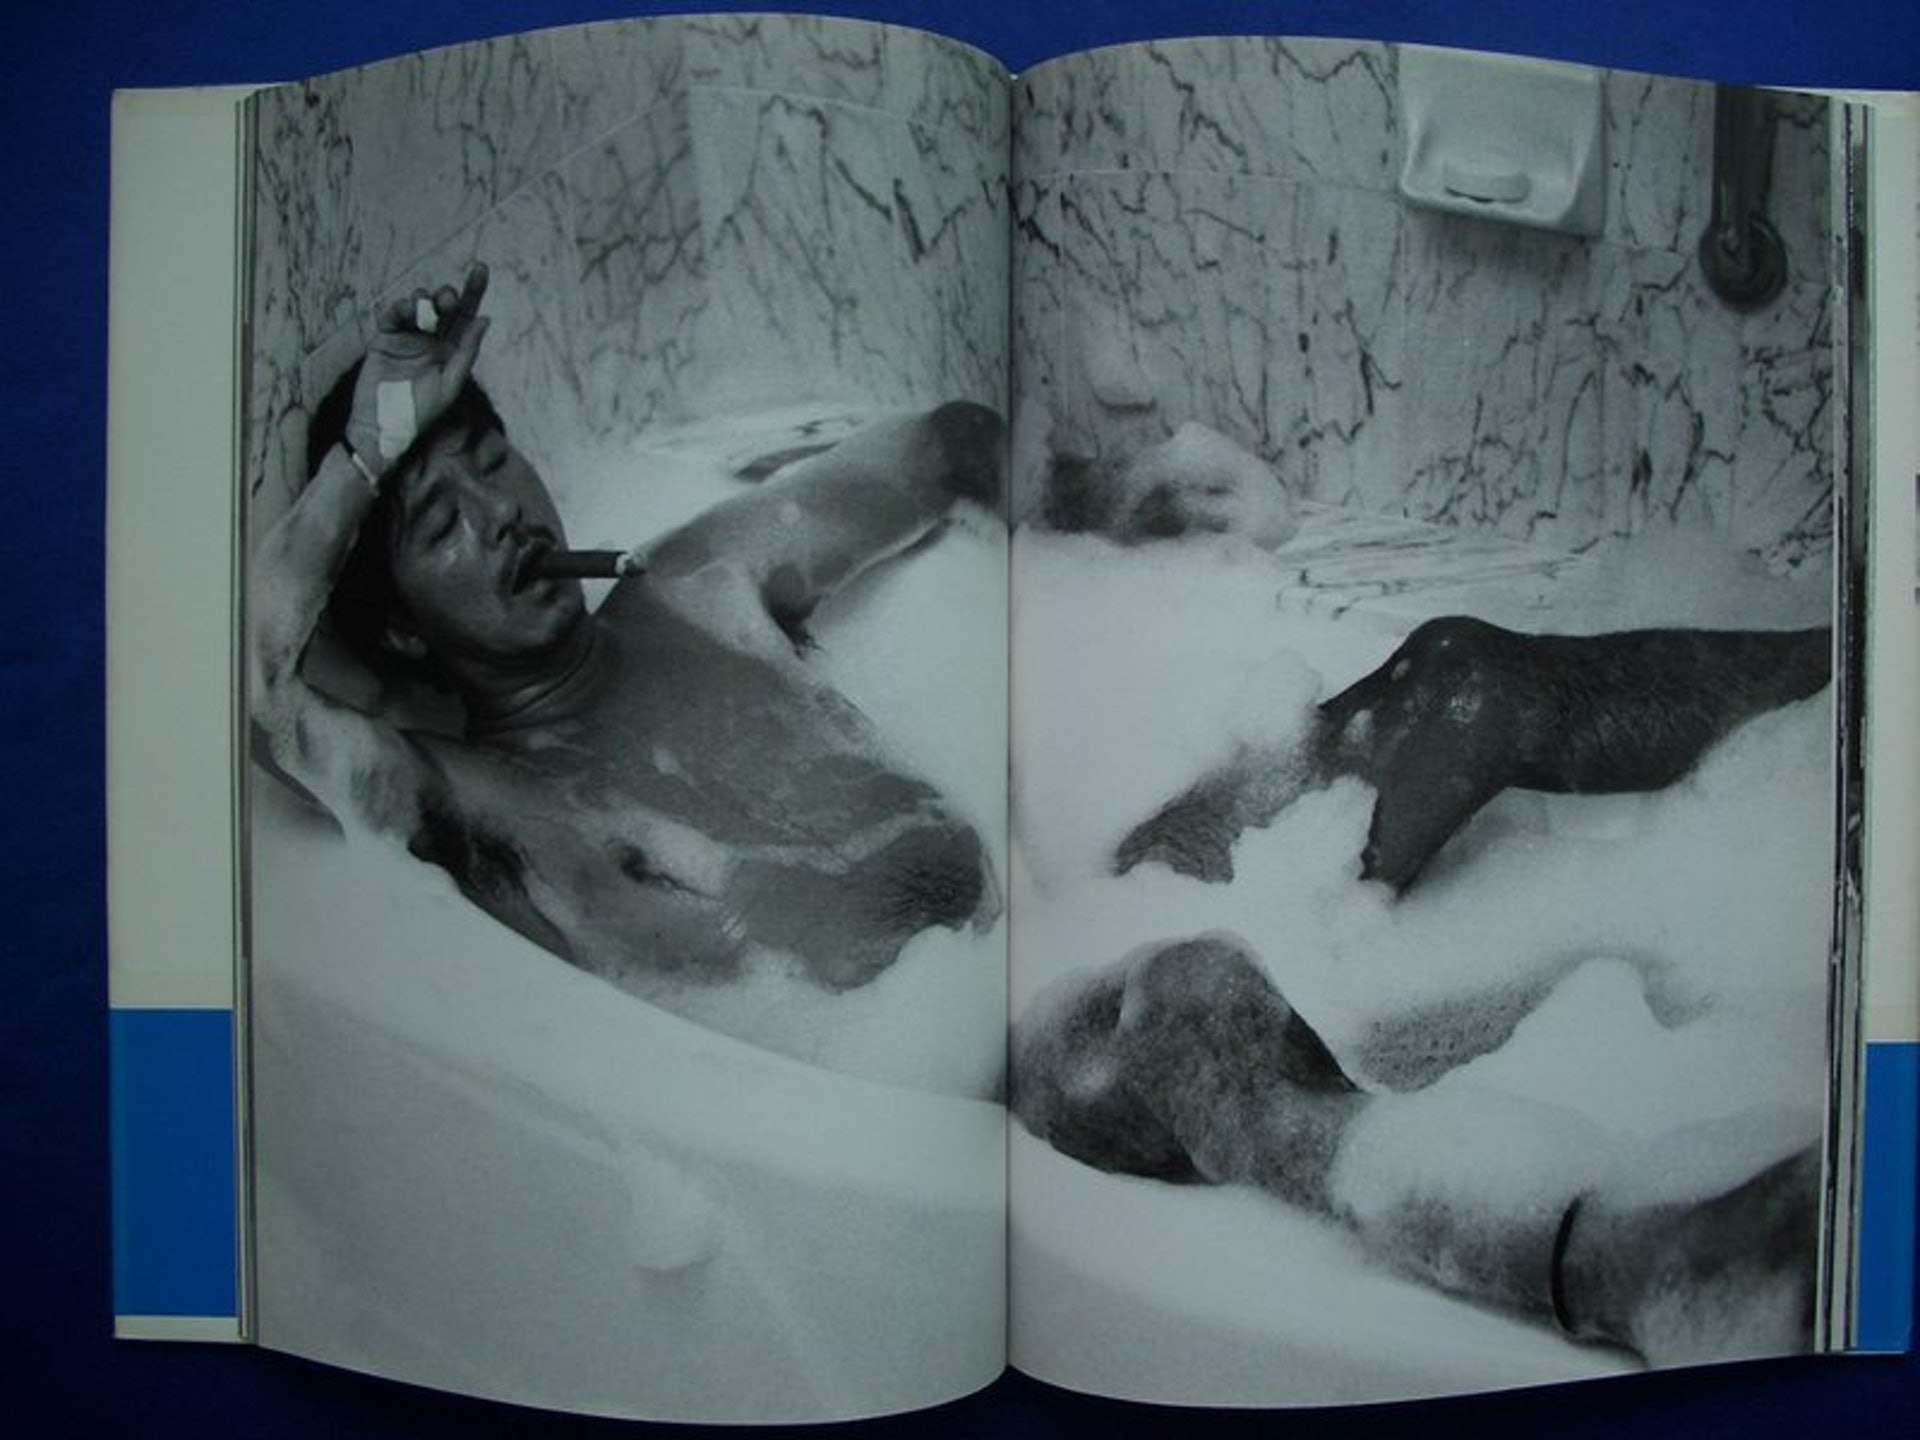 西城秀樹45歲曾推出全裸寫真集突破社會規範展現男性美感